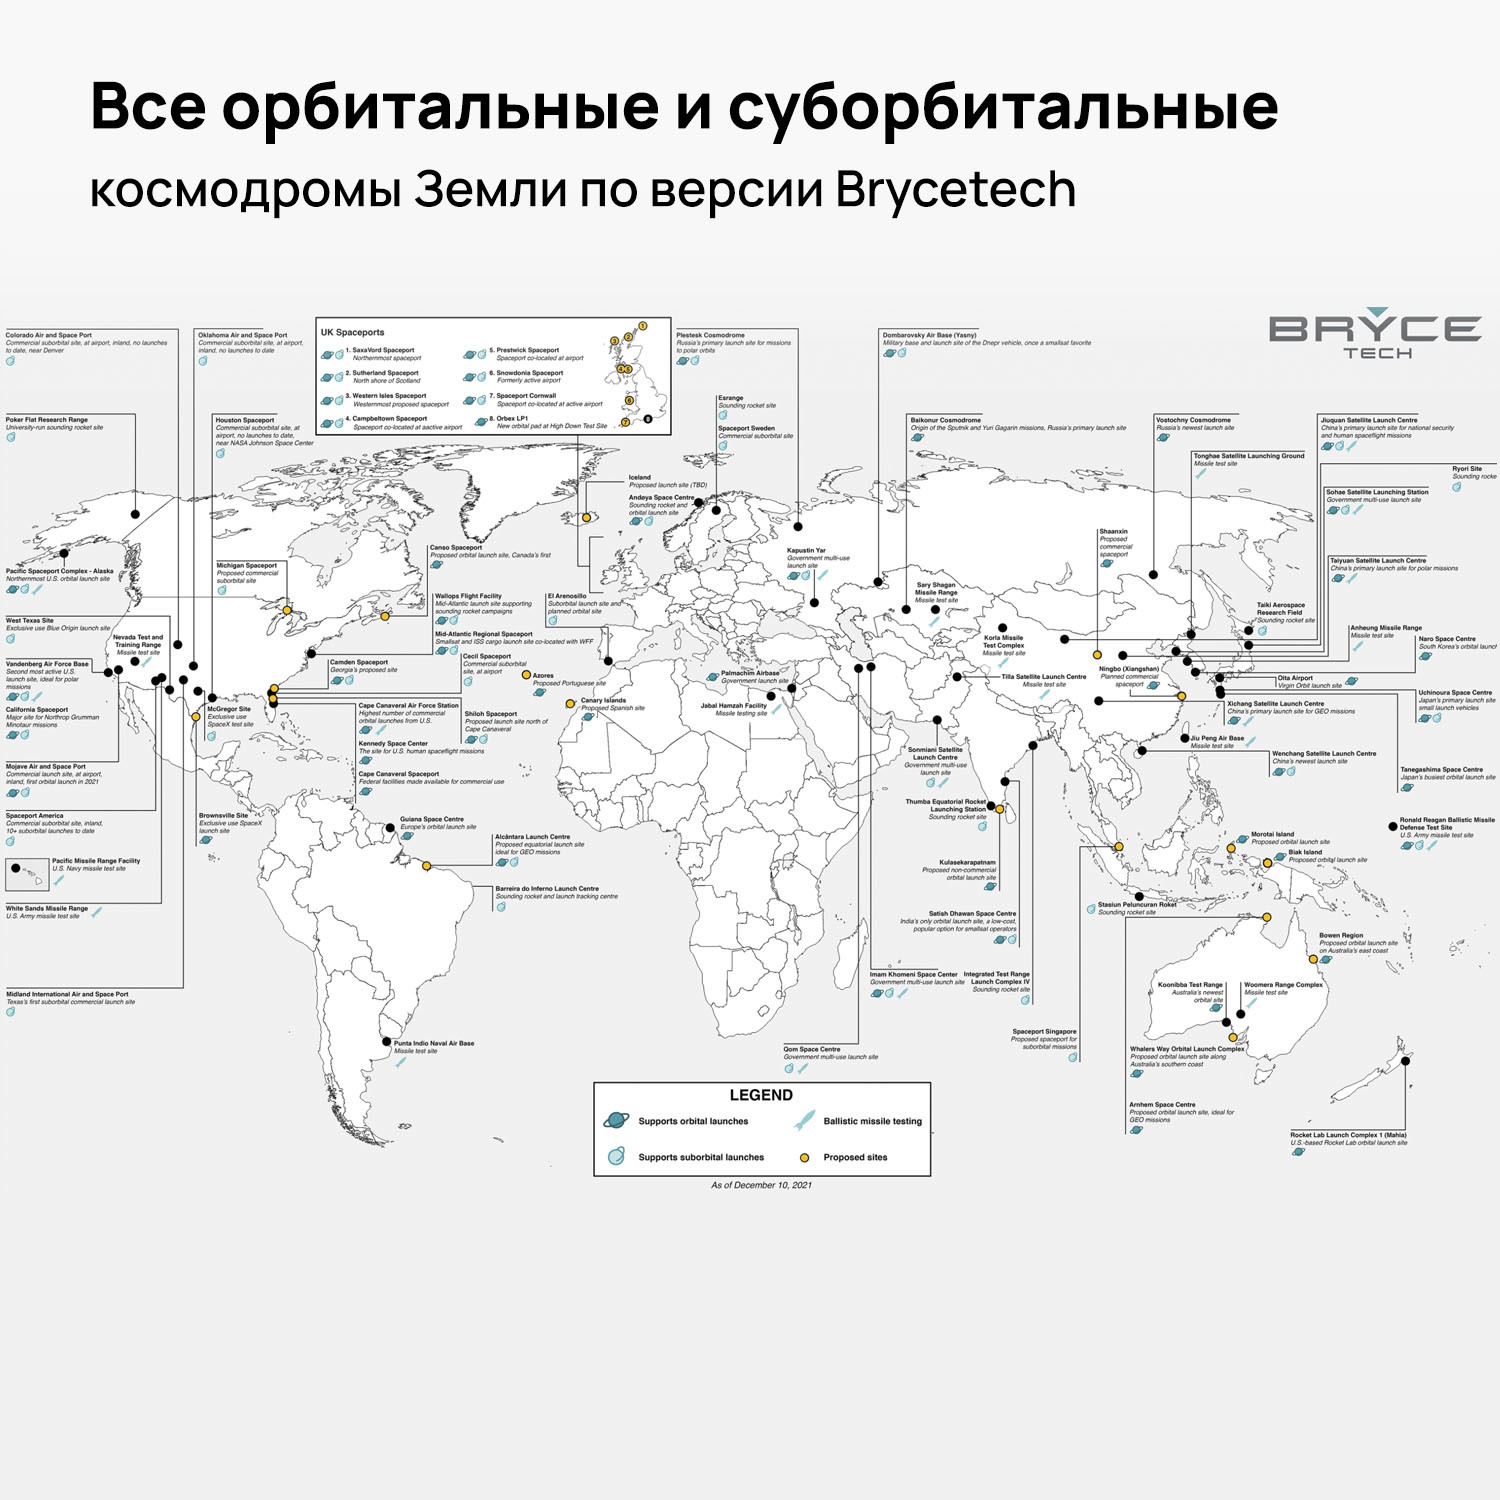 Где в россии космодромы на карте. Карта космодромов в мире. Сколько космодромов в мире по странам. Космодромы США на карте.